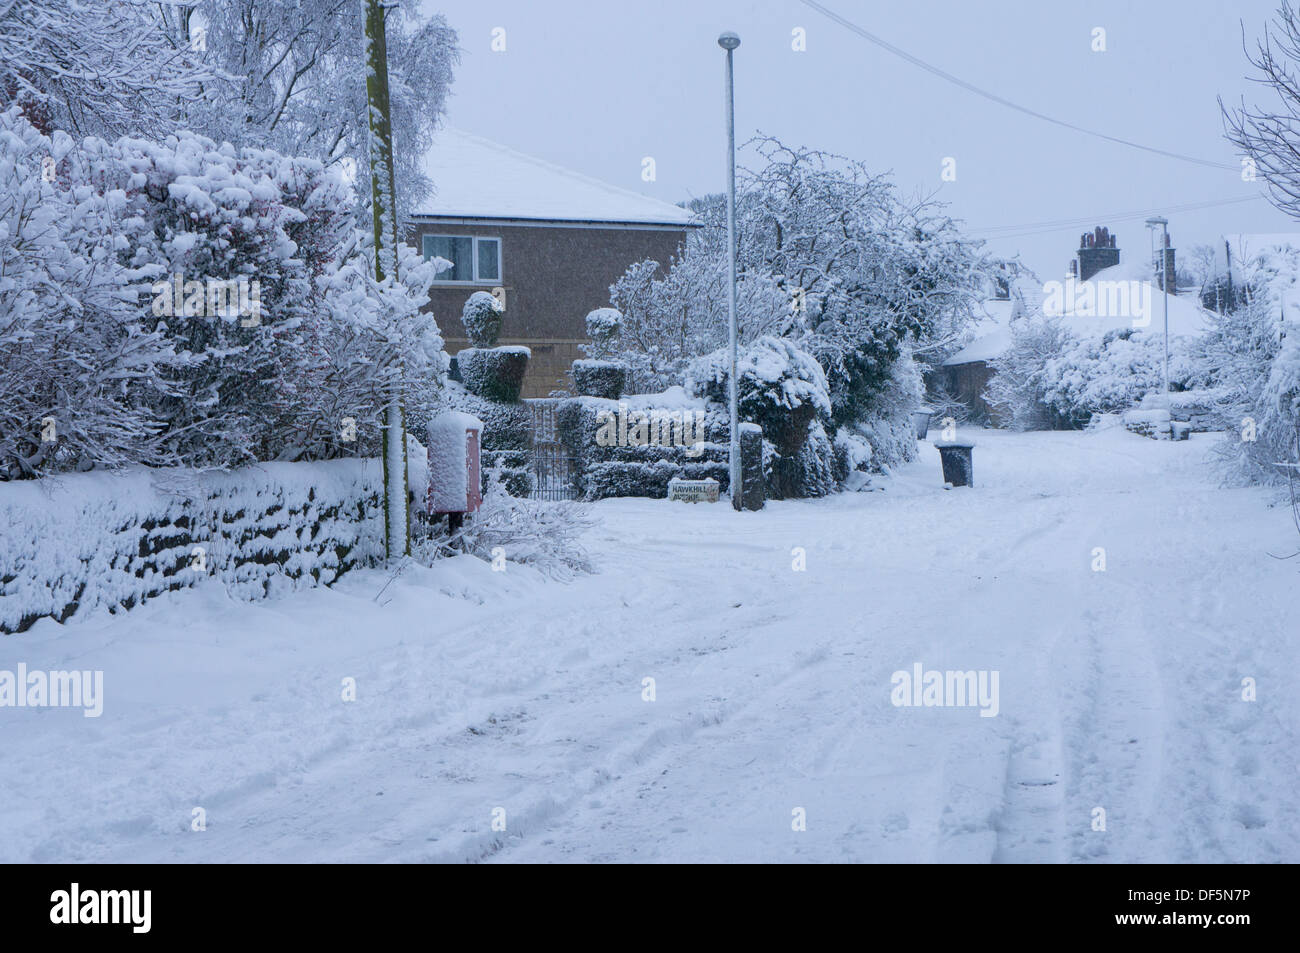 Winter Wonderland - Scène de rue résidentielle tranquille avec arbres, road & Chaussées, couverte de la couche de neige fraîche, blanche - Guiseley, England, UK. Banque D'Images